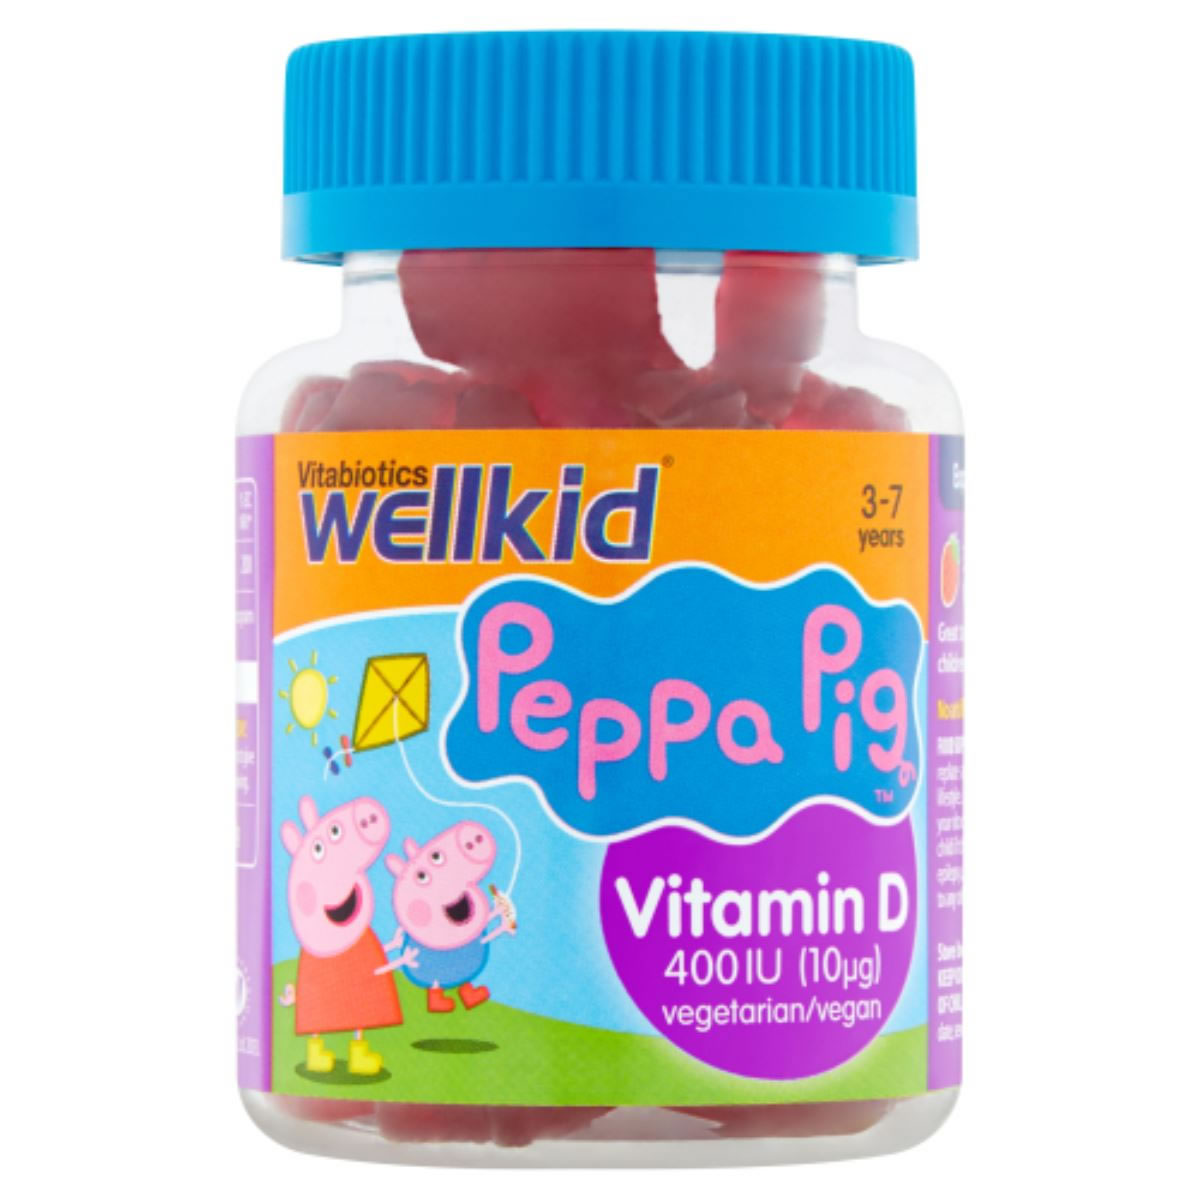 Peppa Pig Vitamin D, 30 jellies